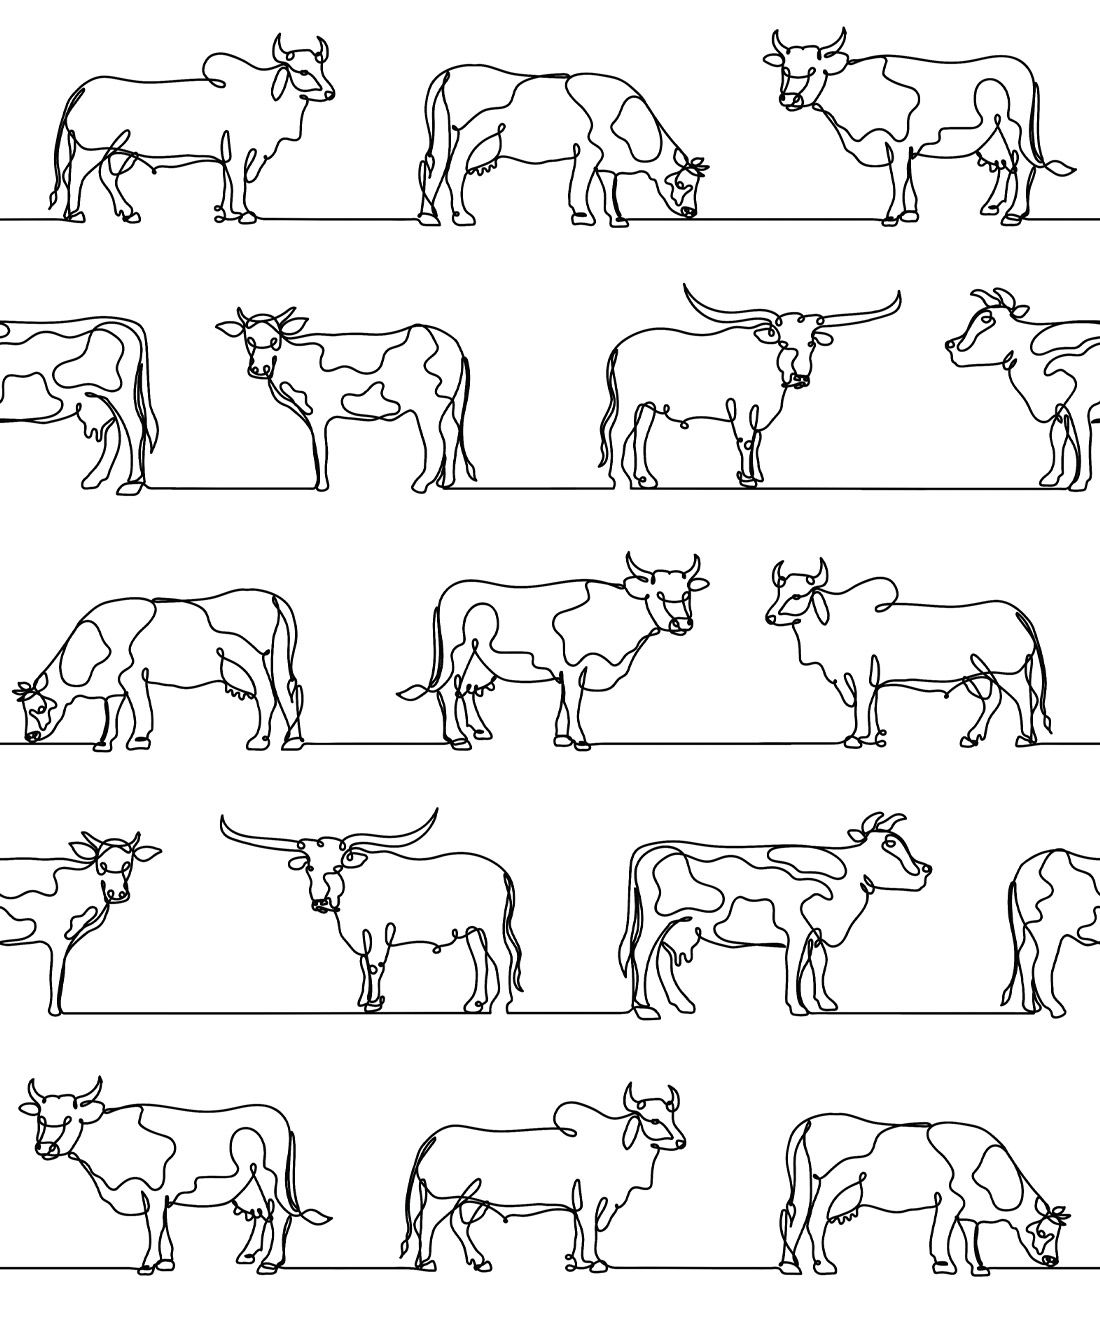 The Herd Wallpapers